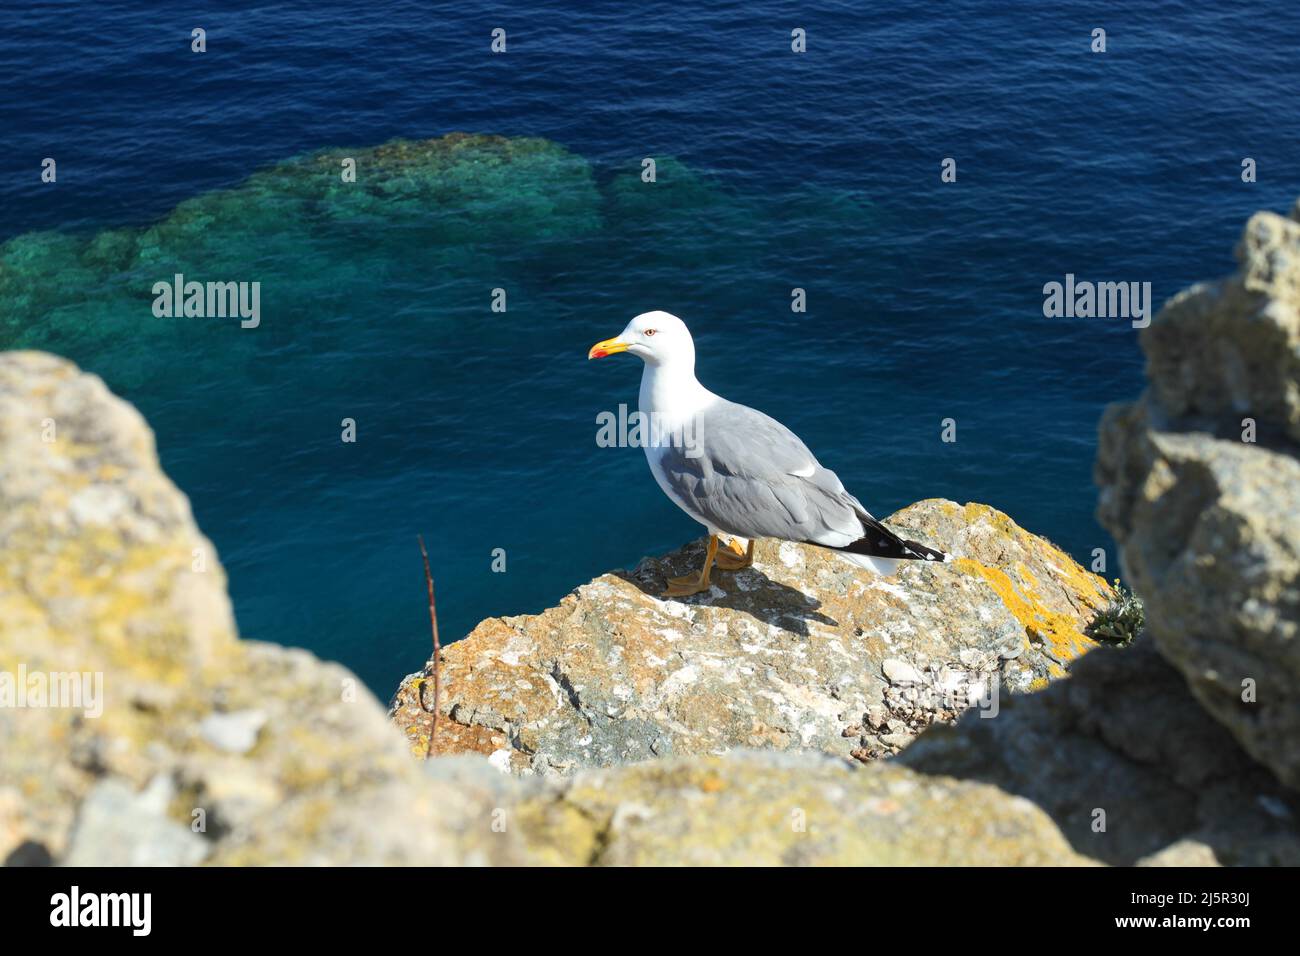 Dans la lumière du soleil, un mouette debout sur des rochers en face de la belle mer bleu turquoise Banque D'Images